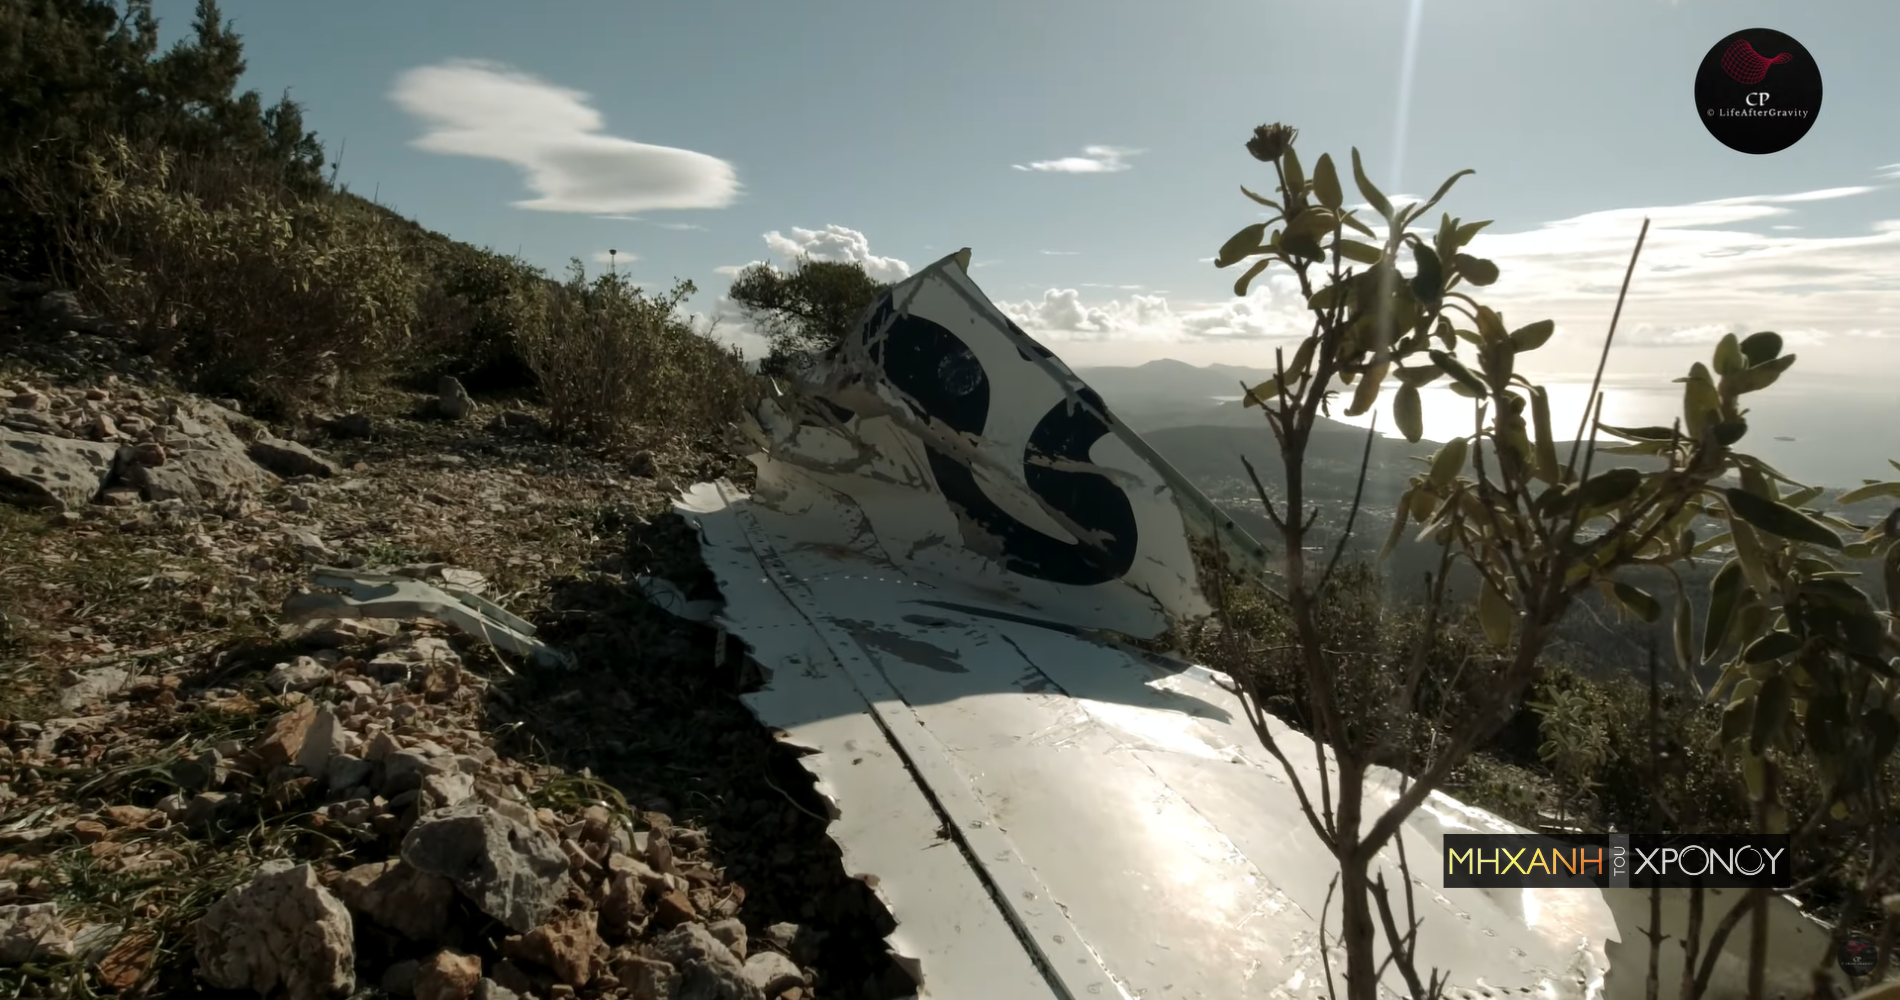 Το αεροπορικό που συγκλόνισε την Αθήνα. Ο πιλότος του Boeing είδε το βουνό 30 δευτερόλεπτα πριν συντριβεί. Δείτε το σημείο